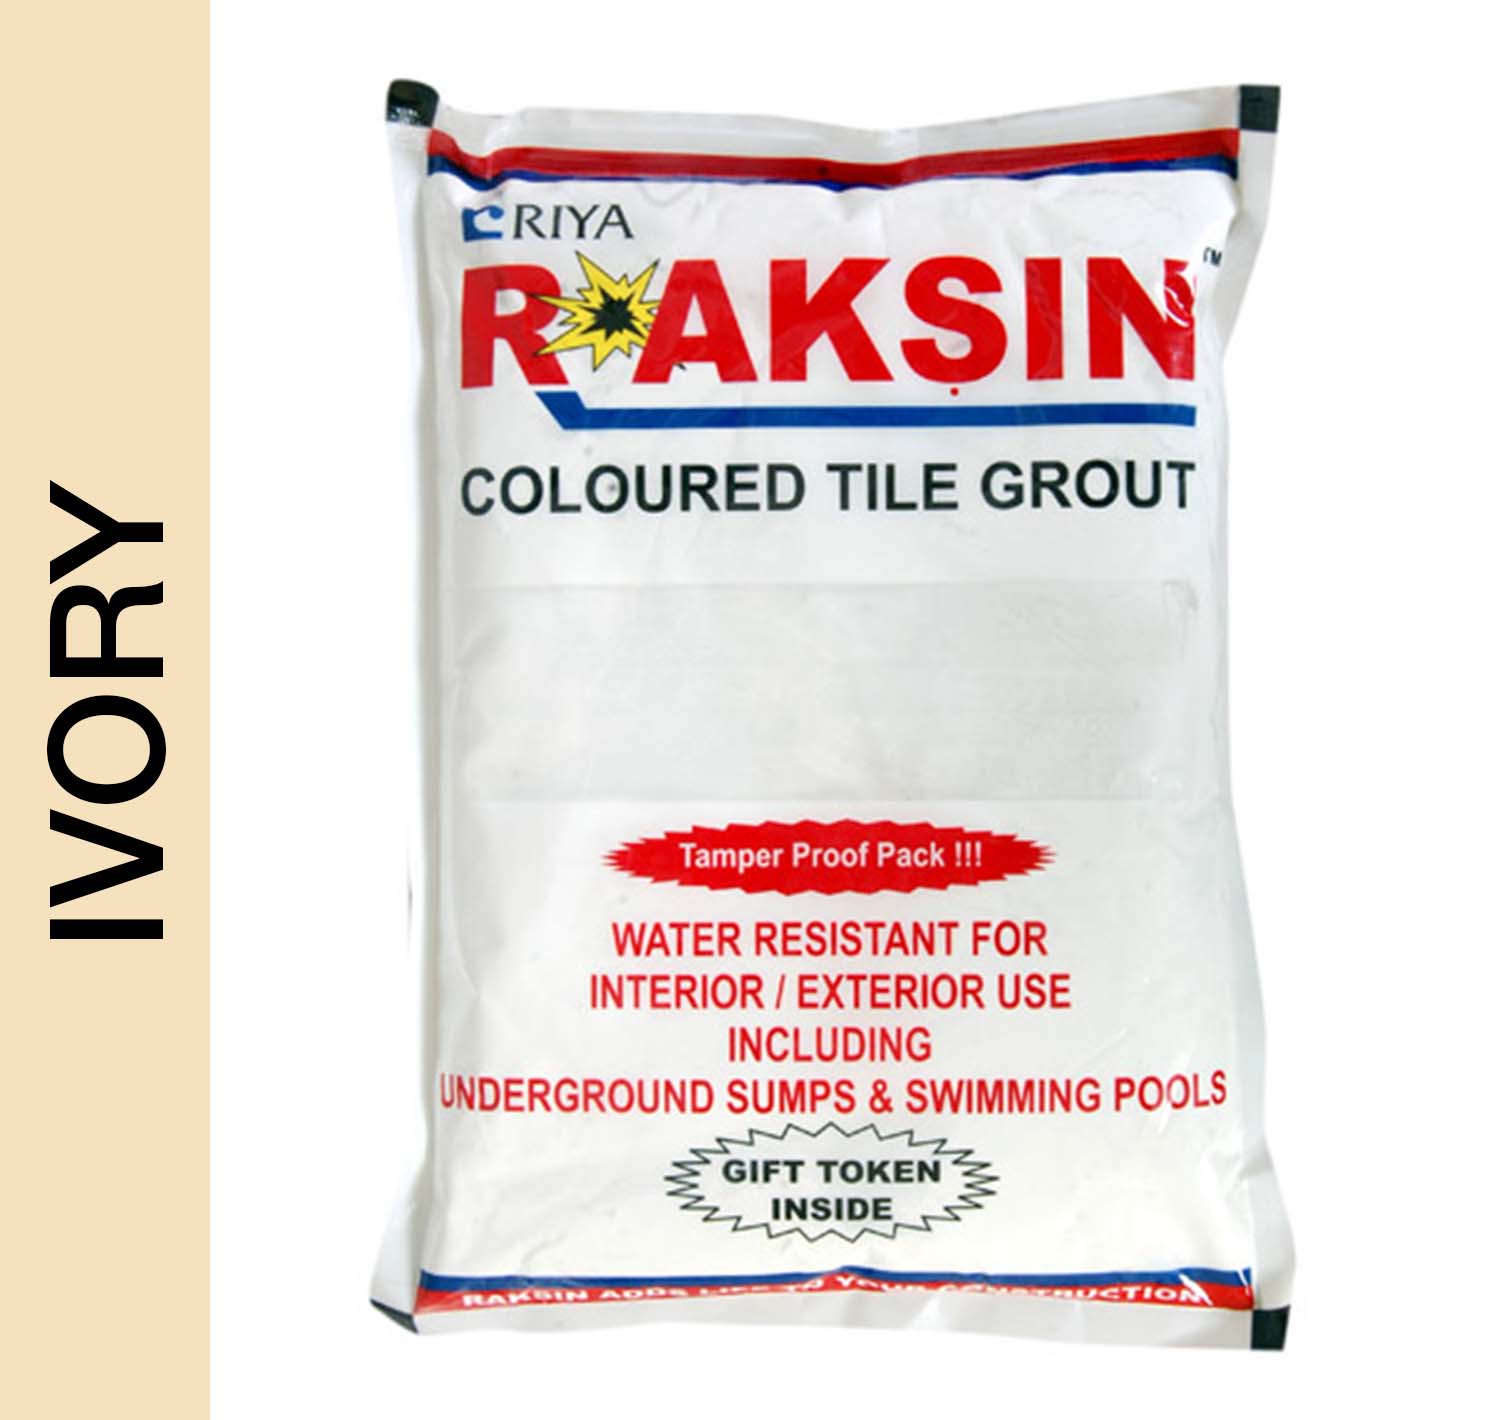 Riya Raksin Coloured Tile Grout Waterproof Cement Ivory